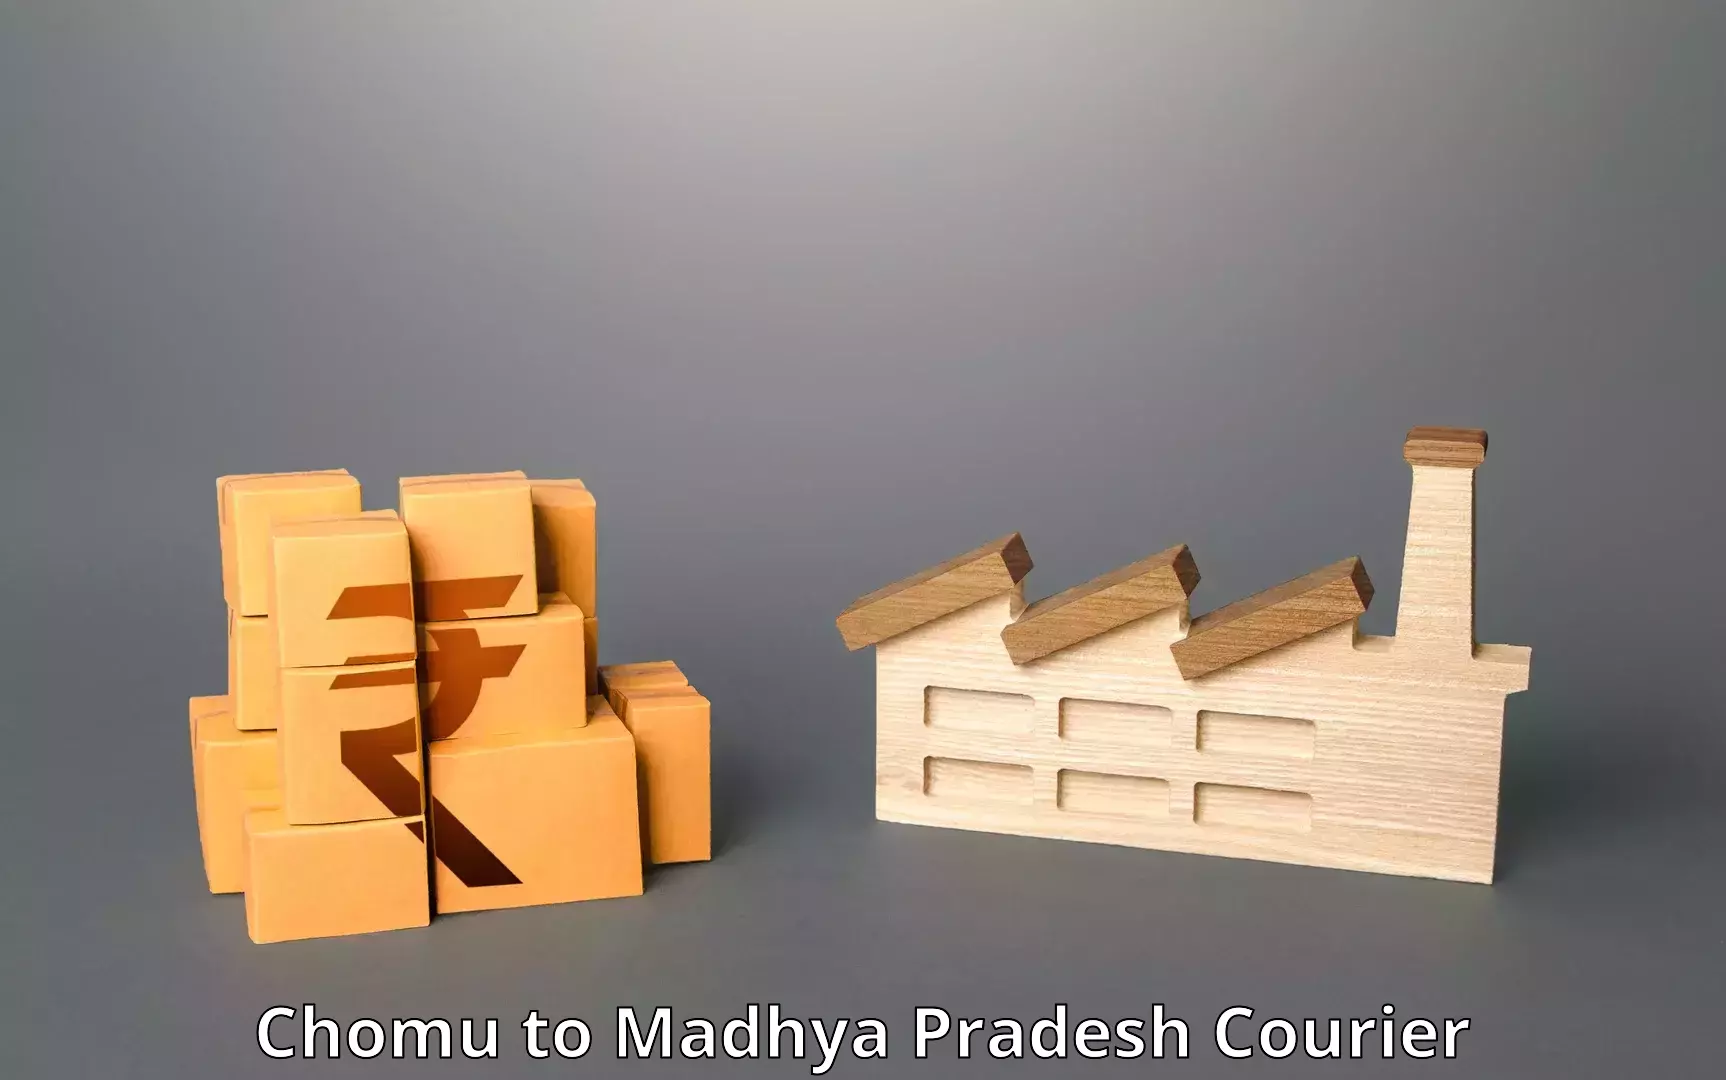 Professional courier handling Chomu to Madhya Pradesh